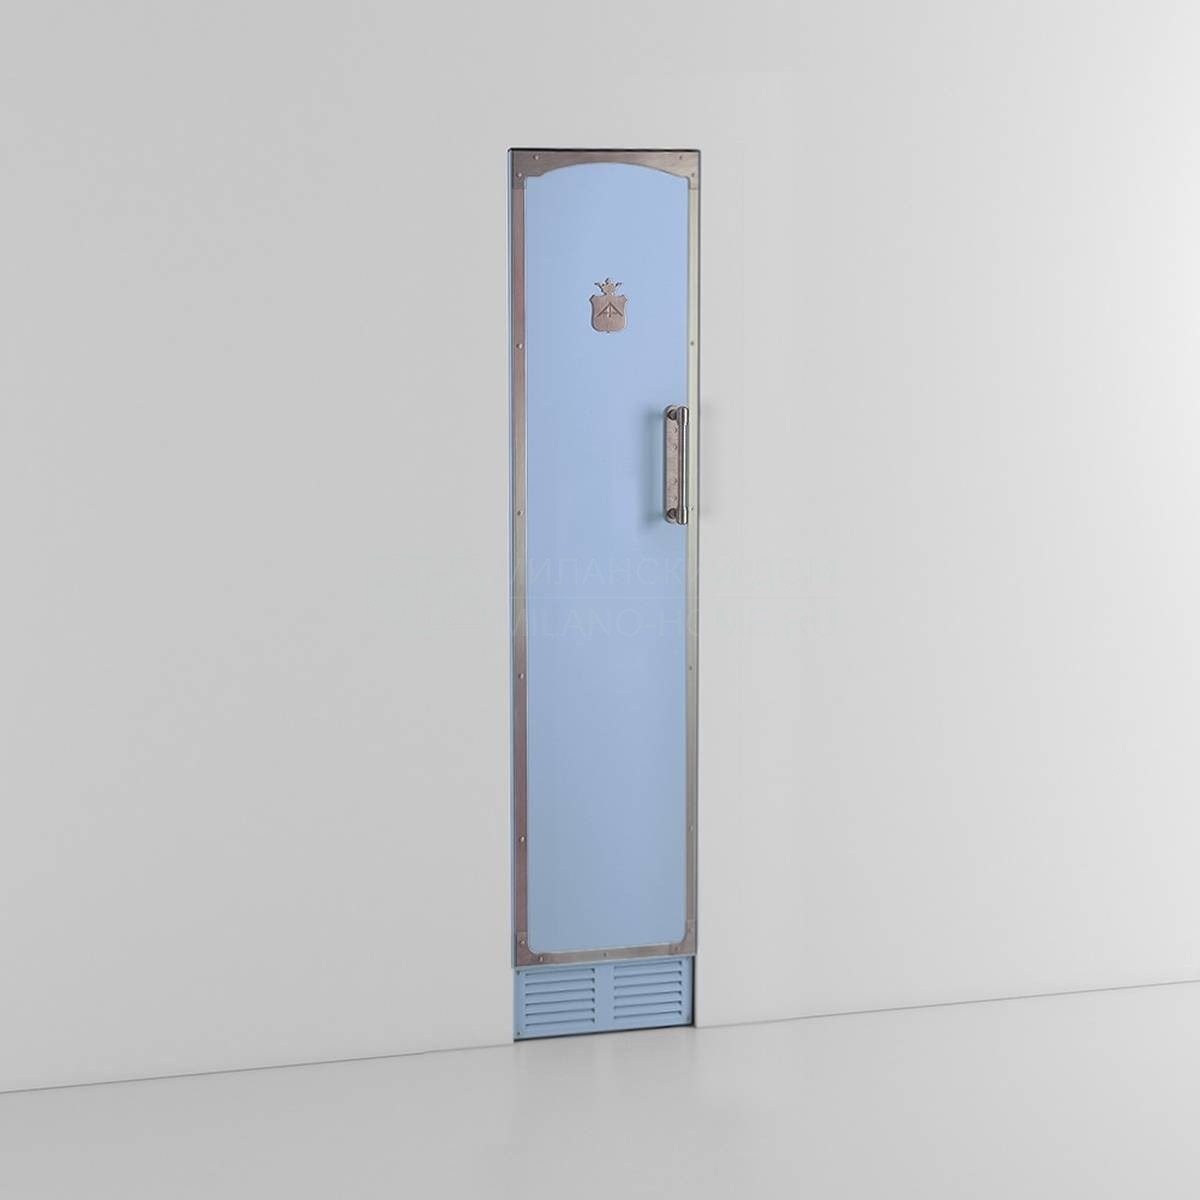 Морозильная камера Single door freezer 45 CM professional series из Италии фабрики OFFICINE GULLO